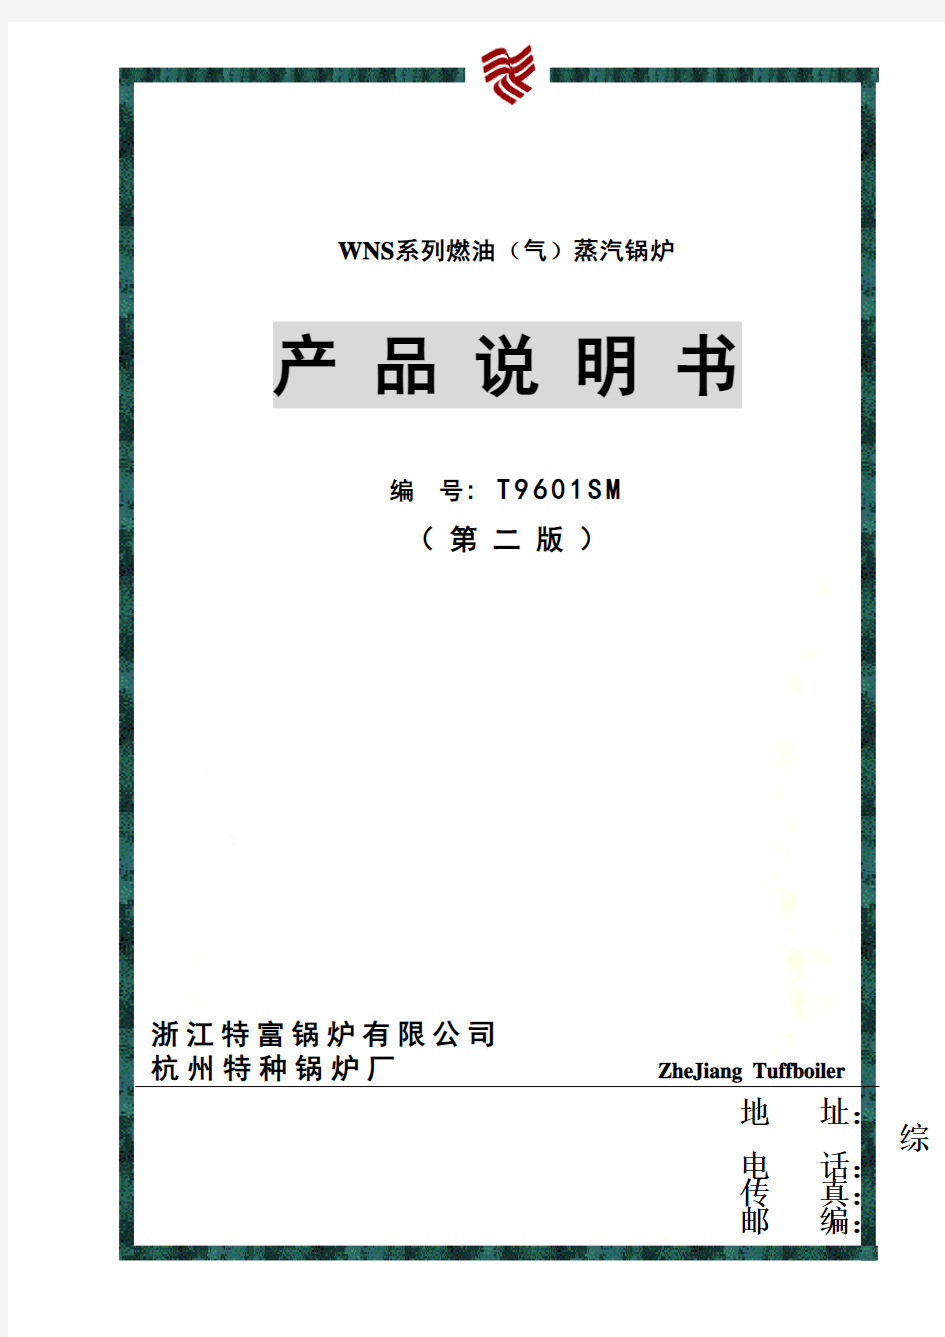 WNS系列燃油蒸汽锅炉产品说明书样本(doc 25页)